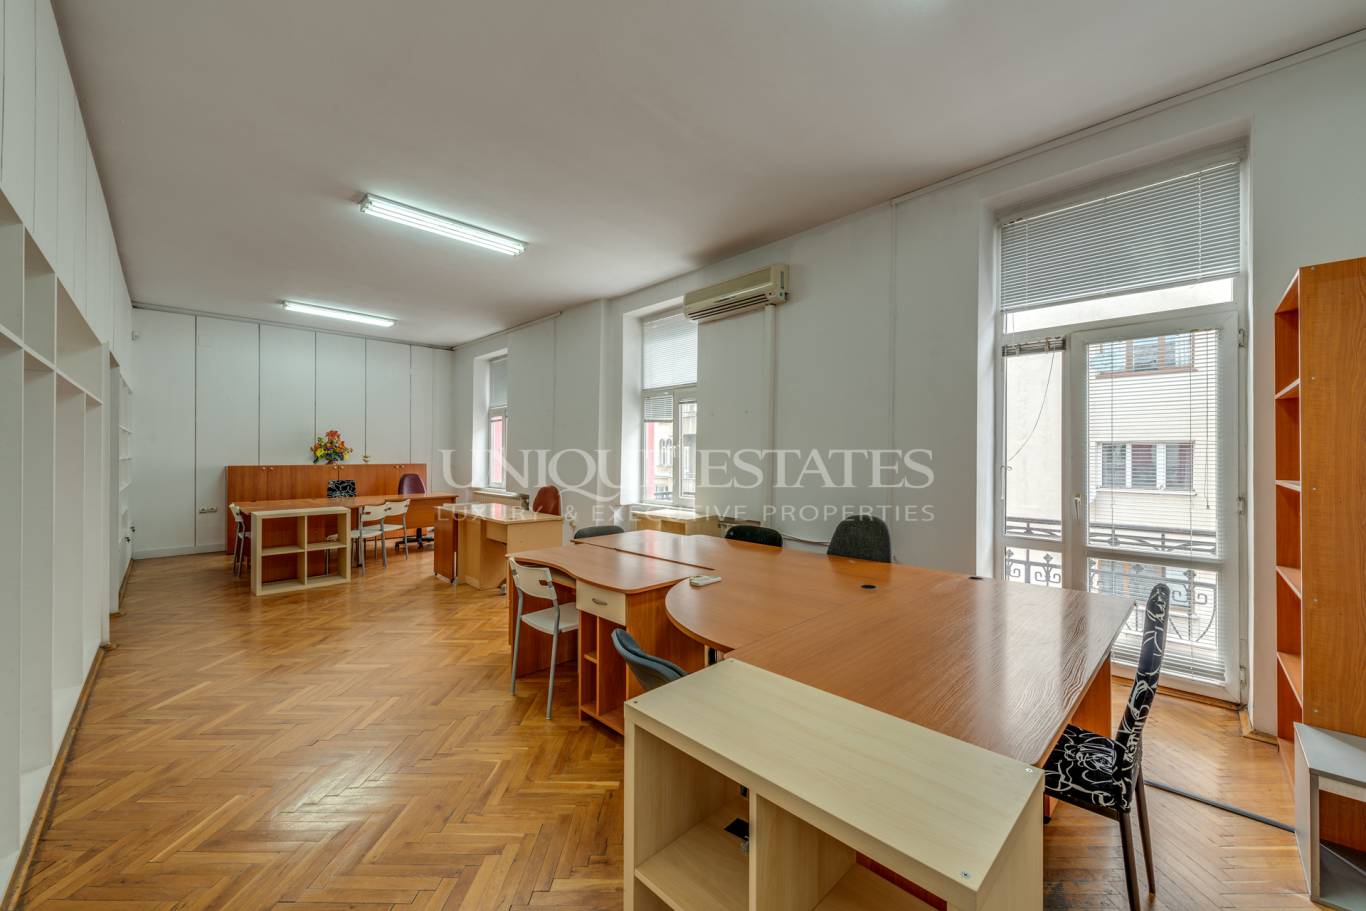 Офис под наем в София, Център - код на имота: K13410 - image 3